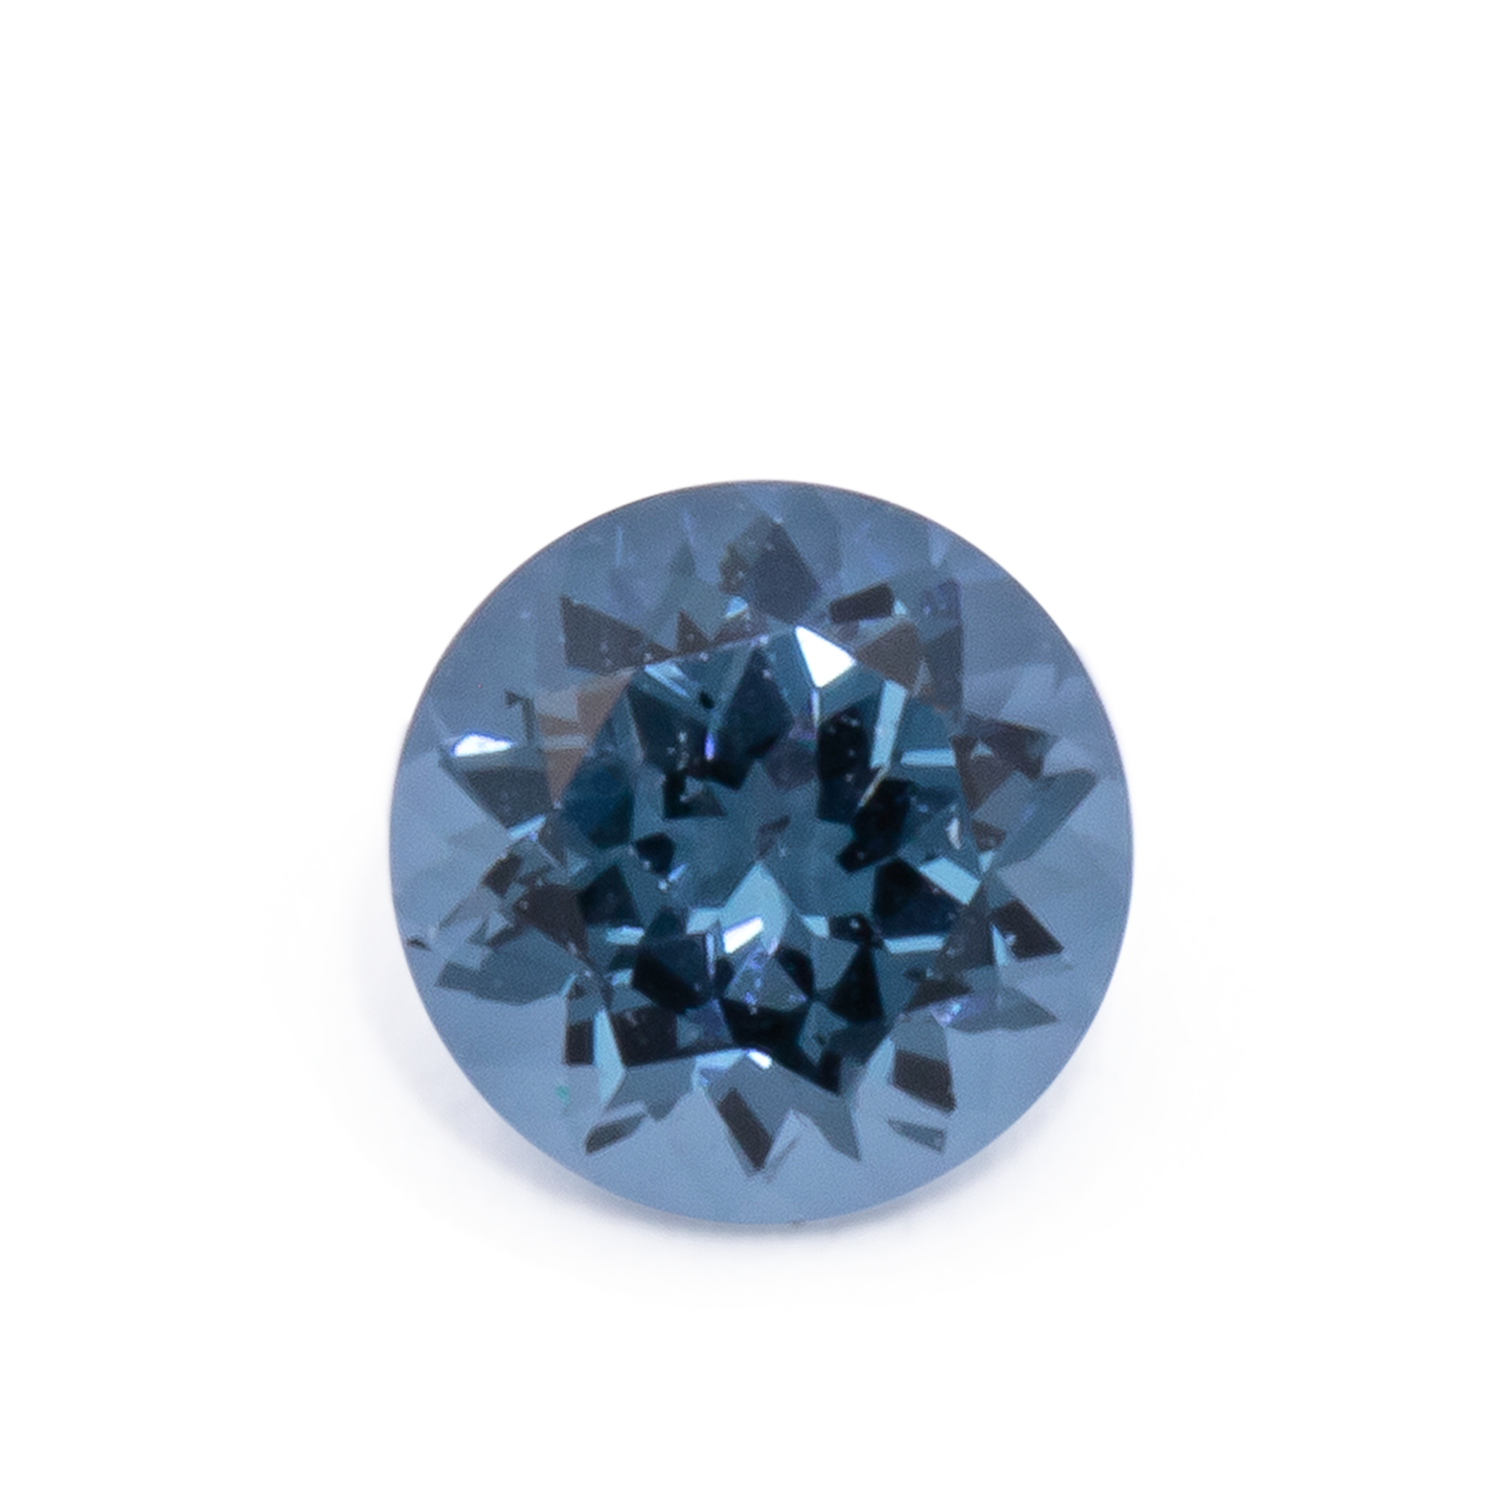 Spinell - blau, rund, 3.5x3.5 mm, 0.21 cts, Nr. SP90070